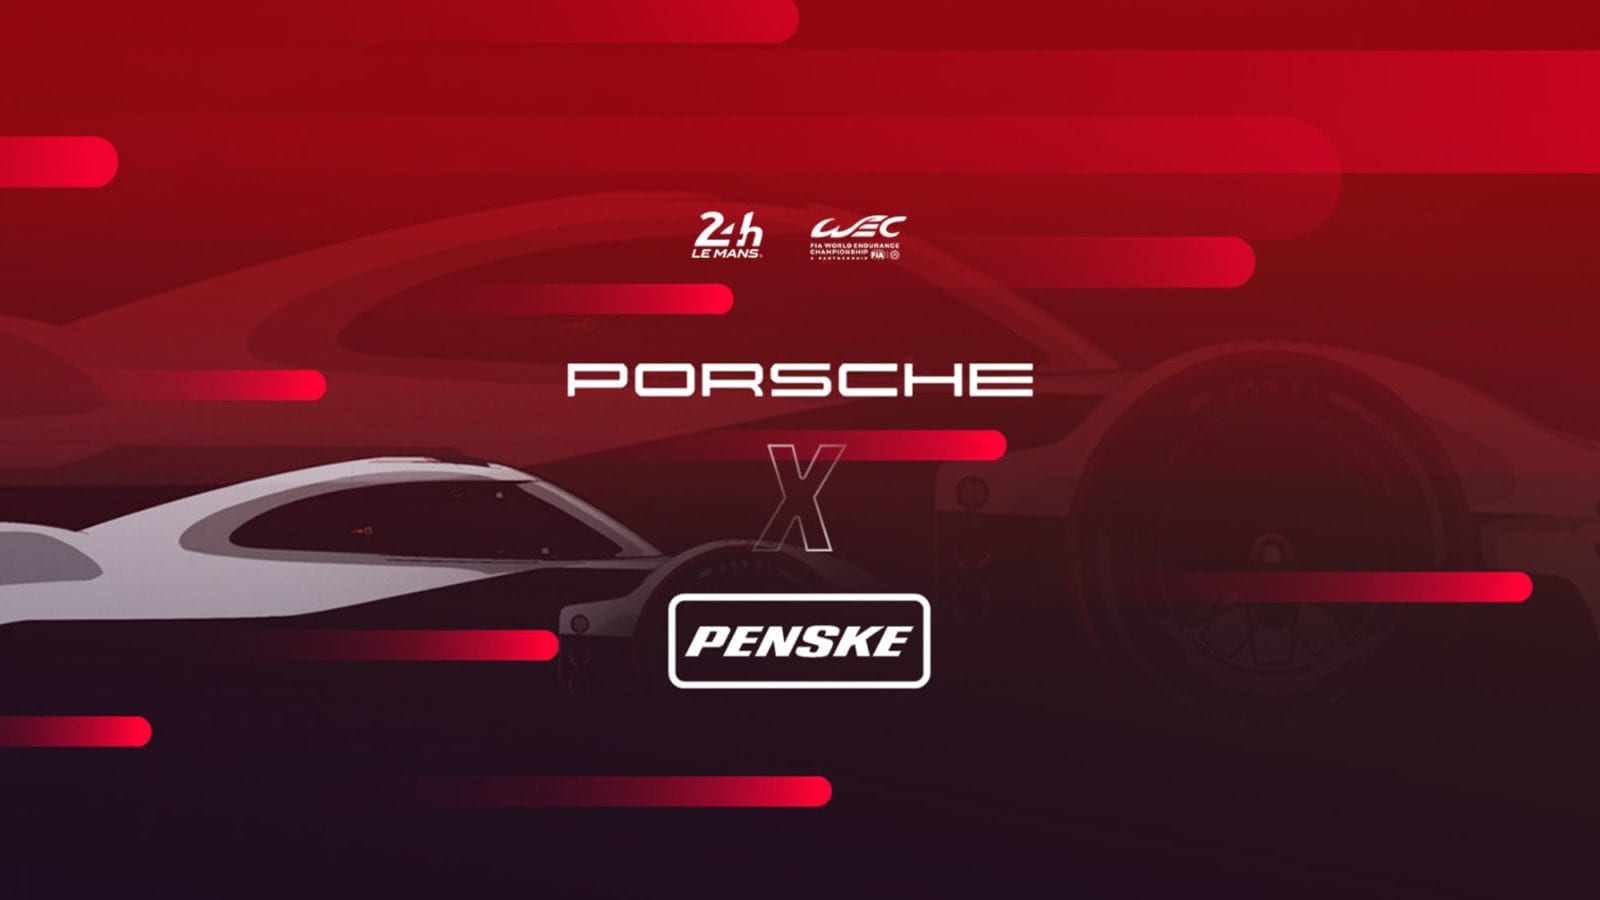 Porsche Penske